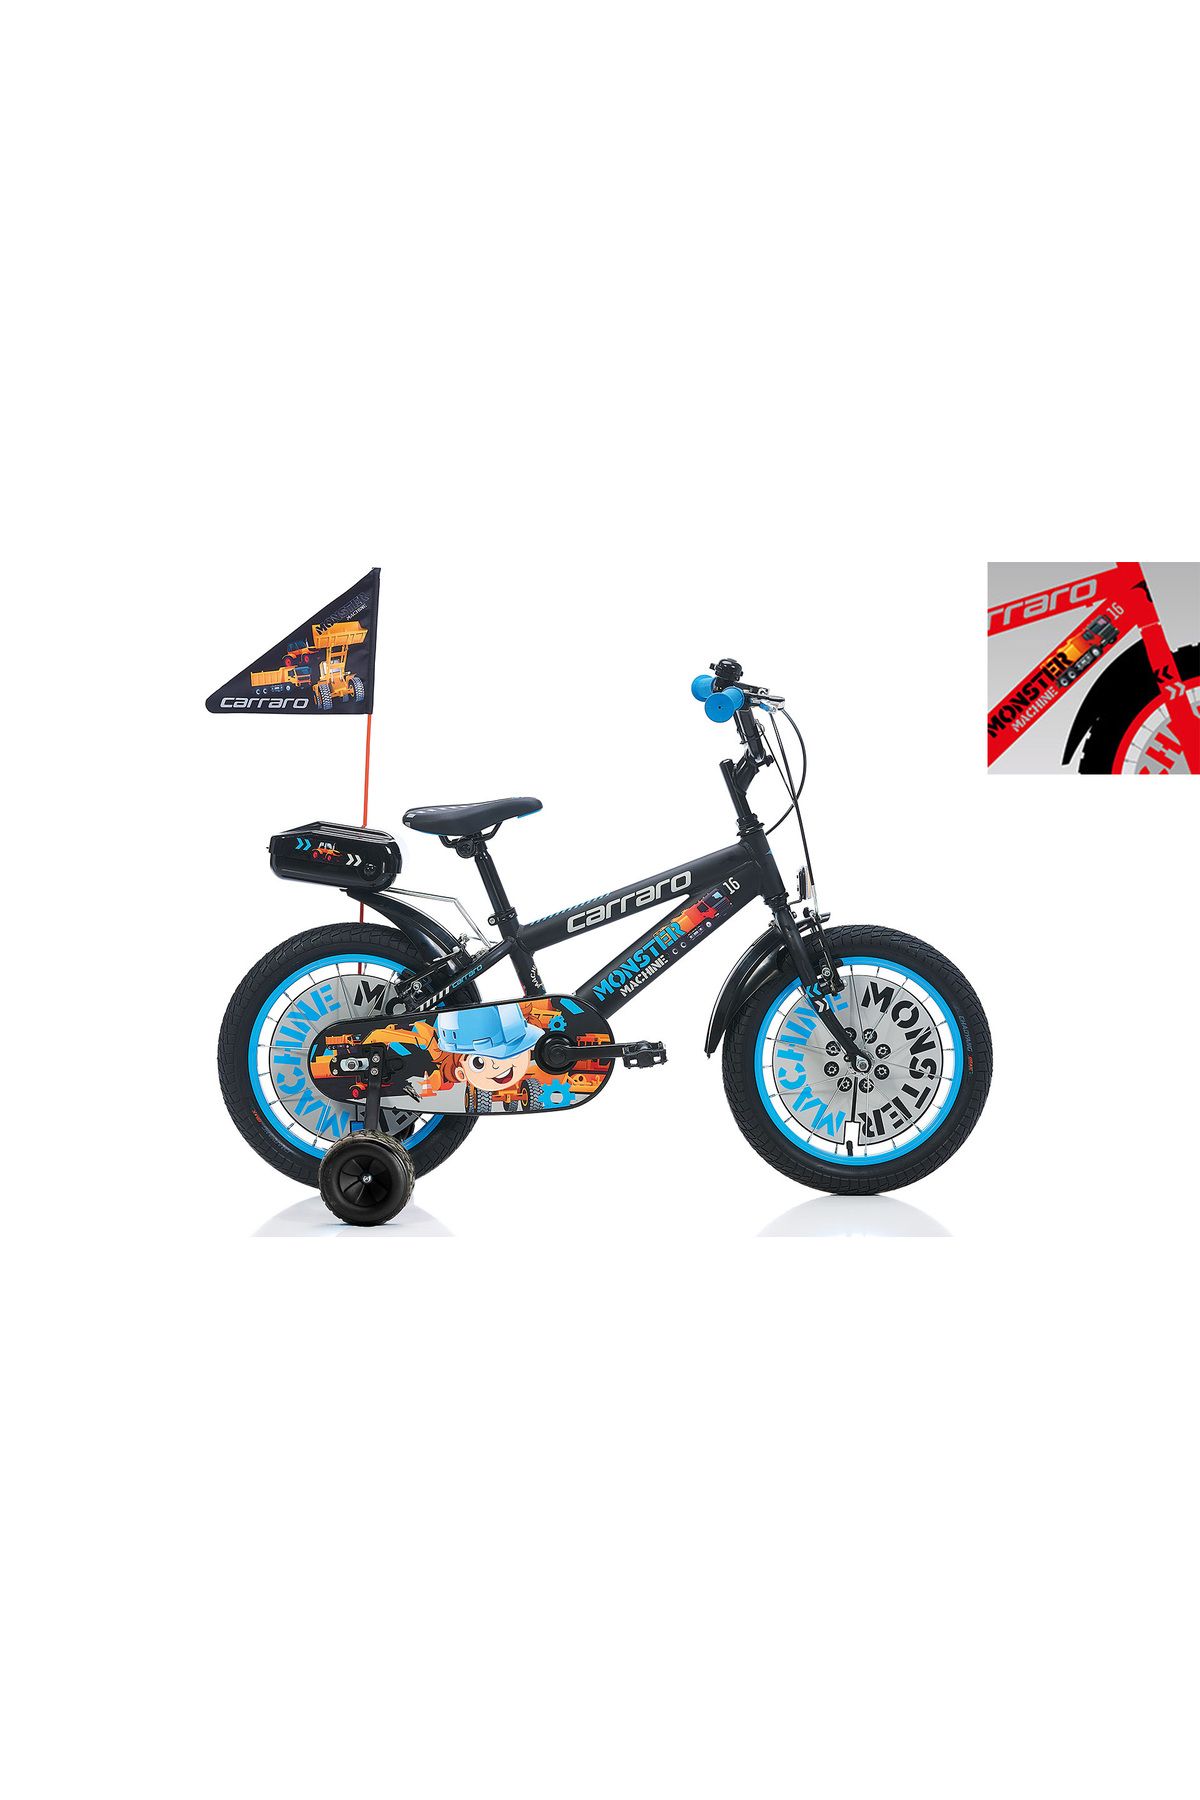 Carraro Monster 16 1-V VB Kırmızı-Gri-Siyah-Kırmızı Çocuk Bisikleti